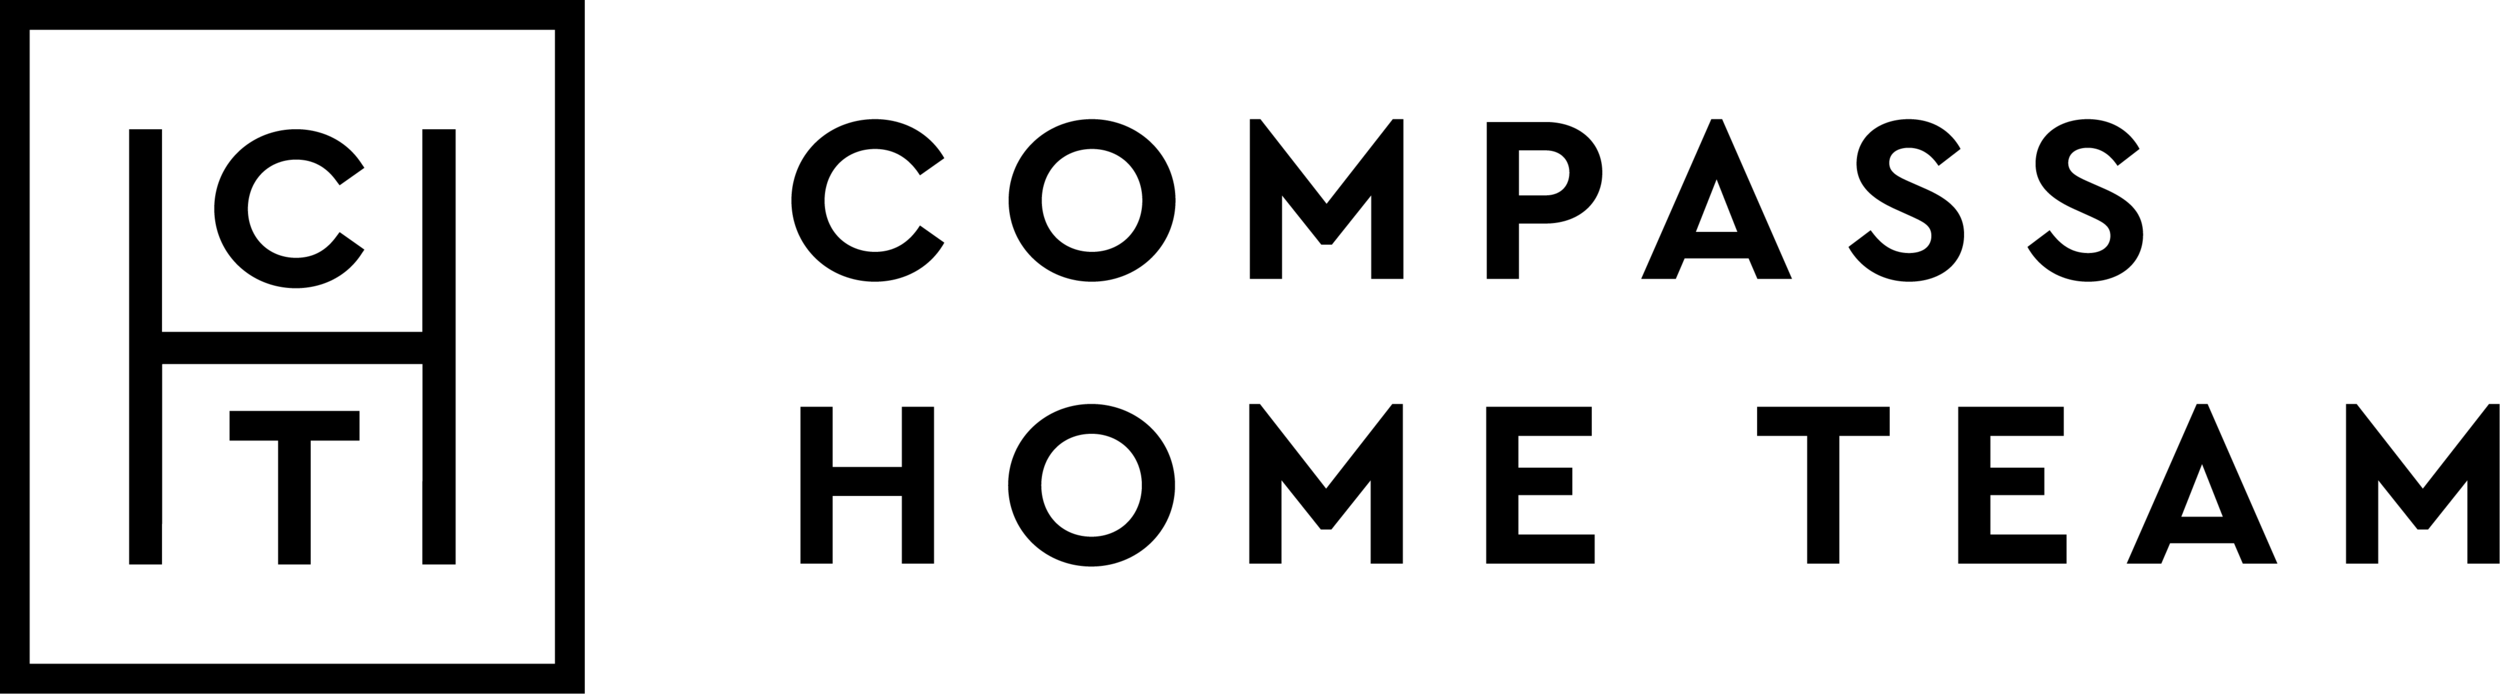 logo_full-black.png